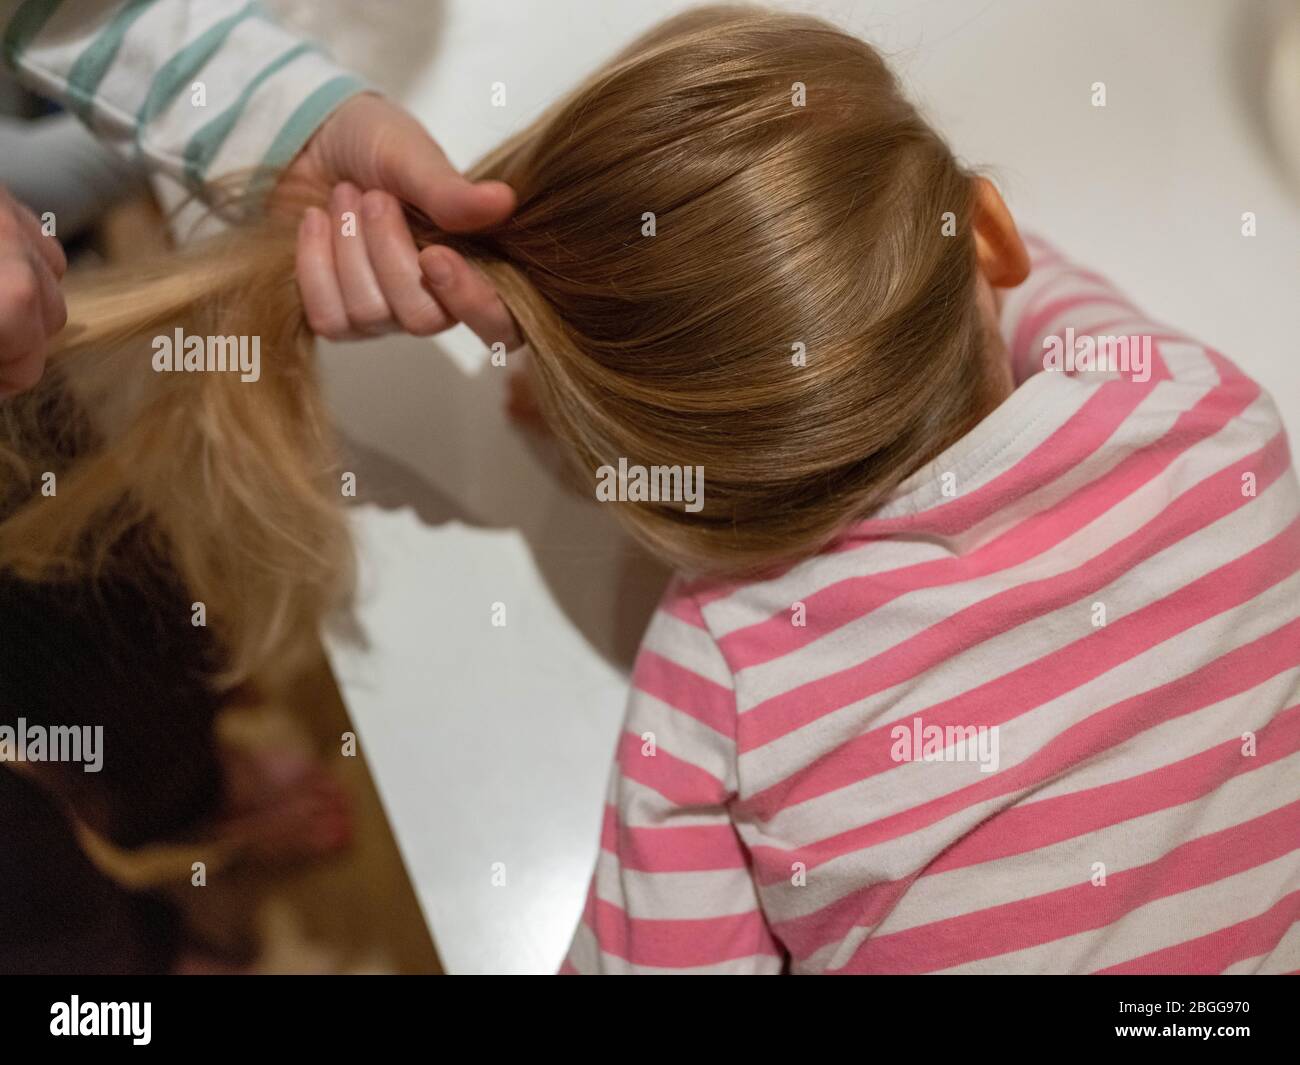 Una ragazza di quattro anni con i capelli biondi lunghi sta avendo i suoi capelli spazzolati dalla sua mamma dopo un lavaggio. Sta guardando via verso una televisione (fuori dal pic Foto Stock